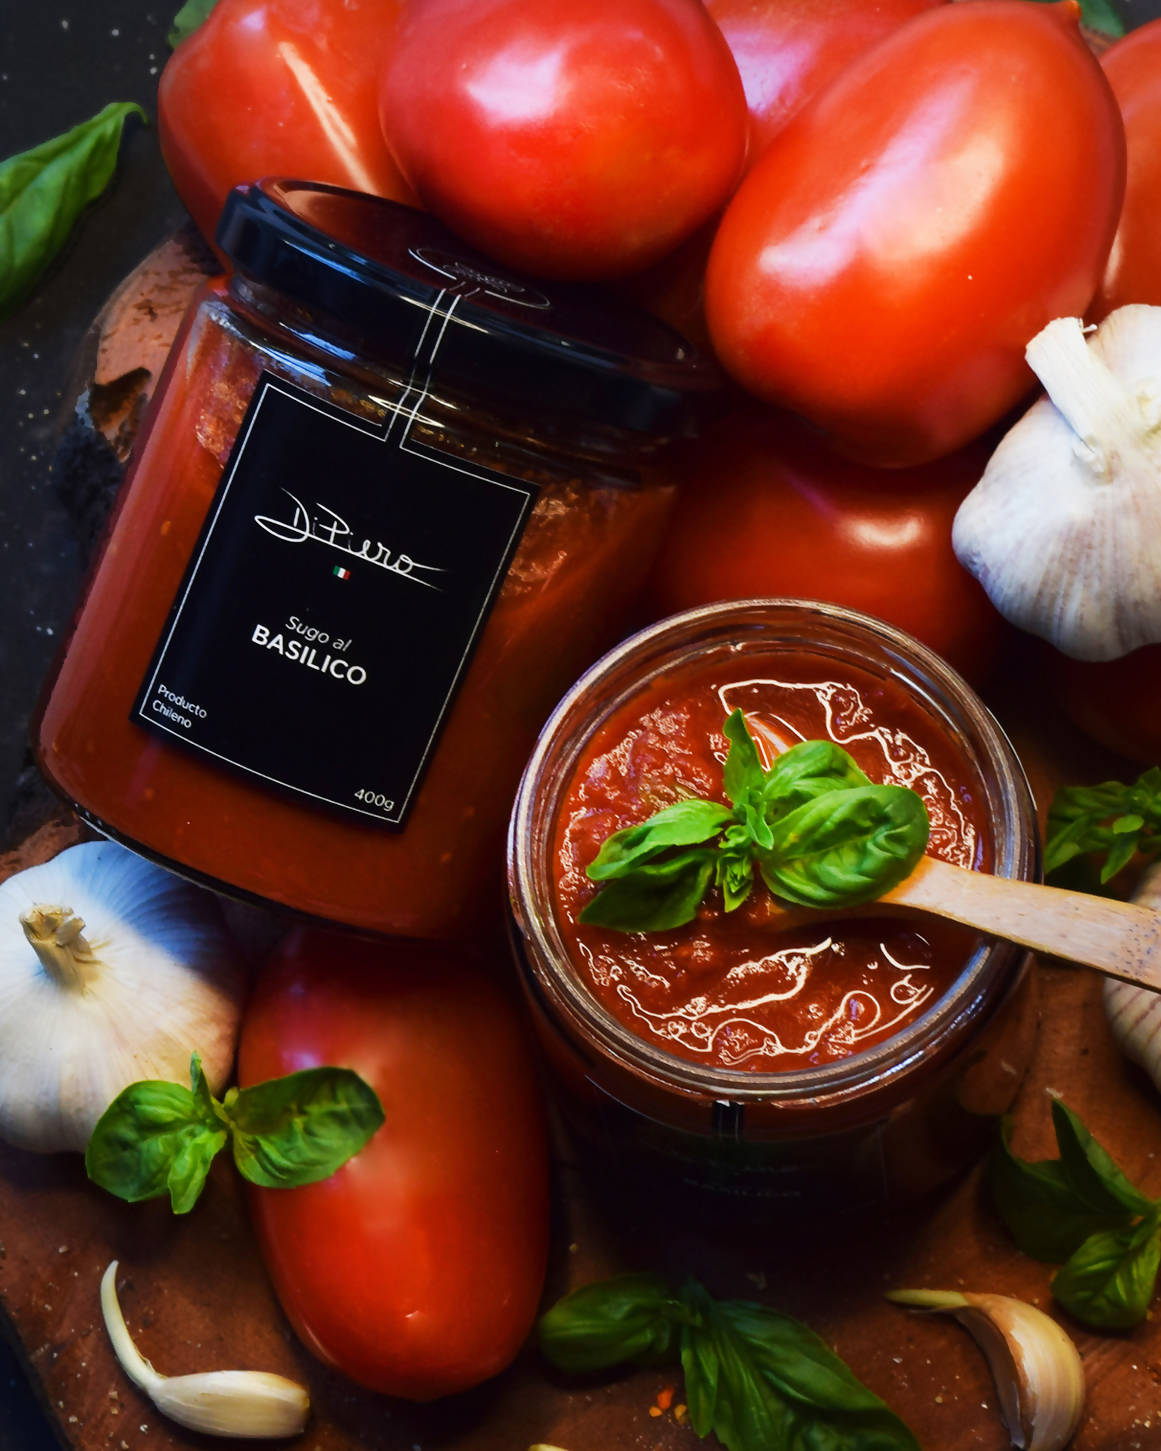 Sugo al Basilico - Salsa de tomate y albahaca